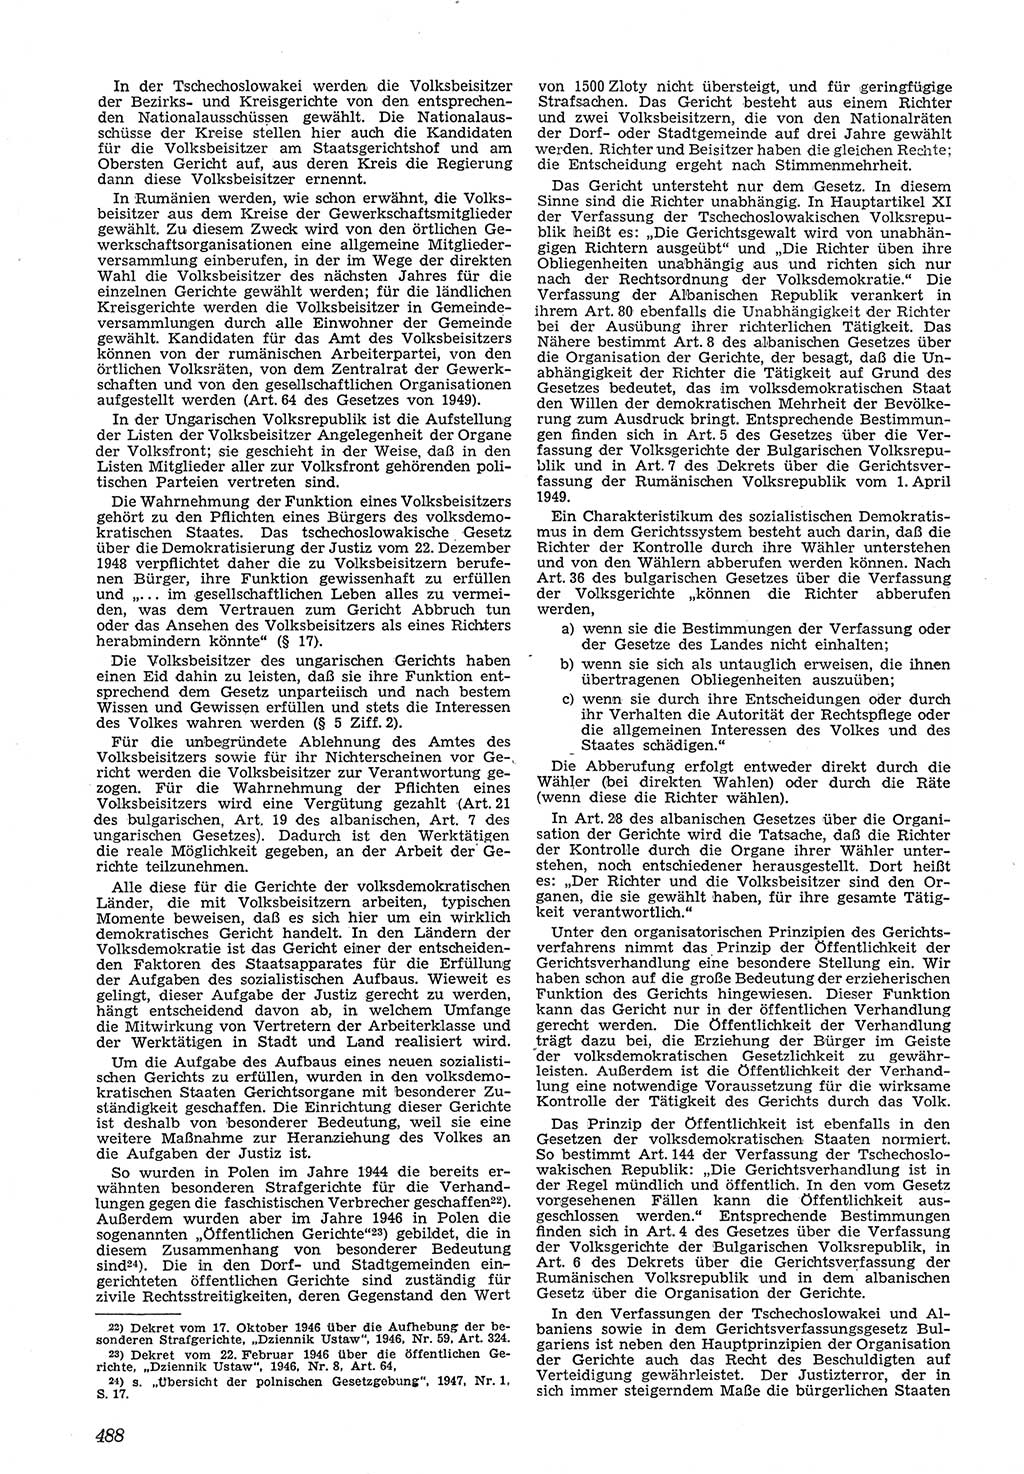 Neue Justiz (NJ), Zeitschrift für Recht und Rechtswissenschaft [Deutsche Demokratische Republik (DDR)], 5. Jahrgang 1951, Seite 488 (NJ DDR 1951, S. 488)